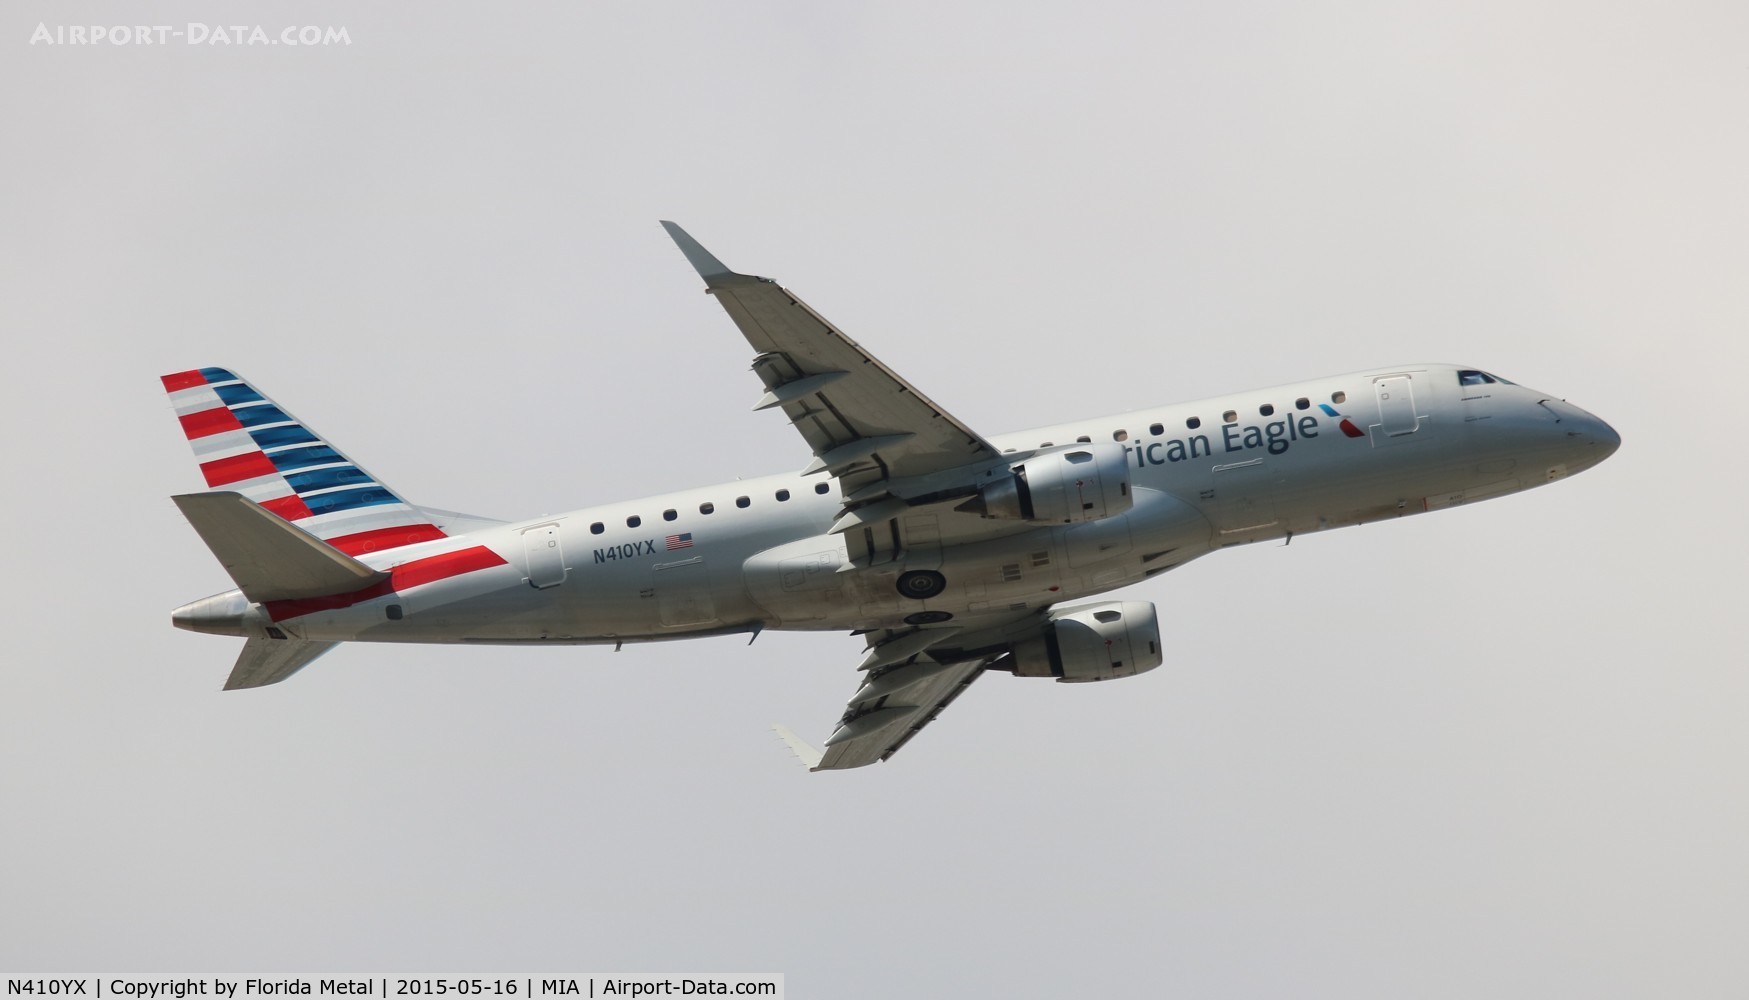 N410YX, 2013 Embraer 175LR (ERJ-170-200LR) C/N 17000373, American Eagle